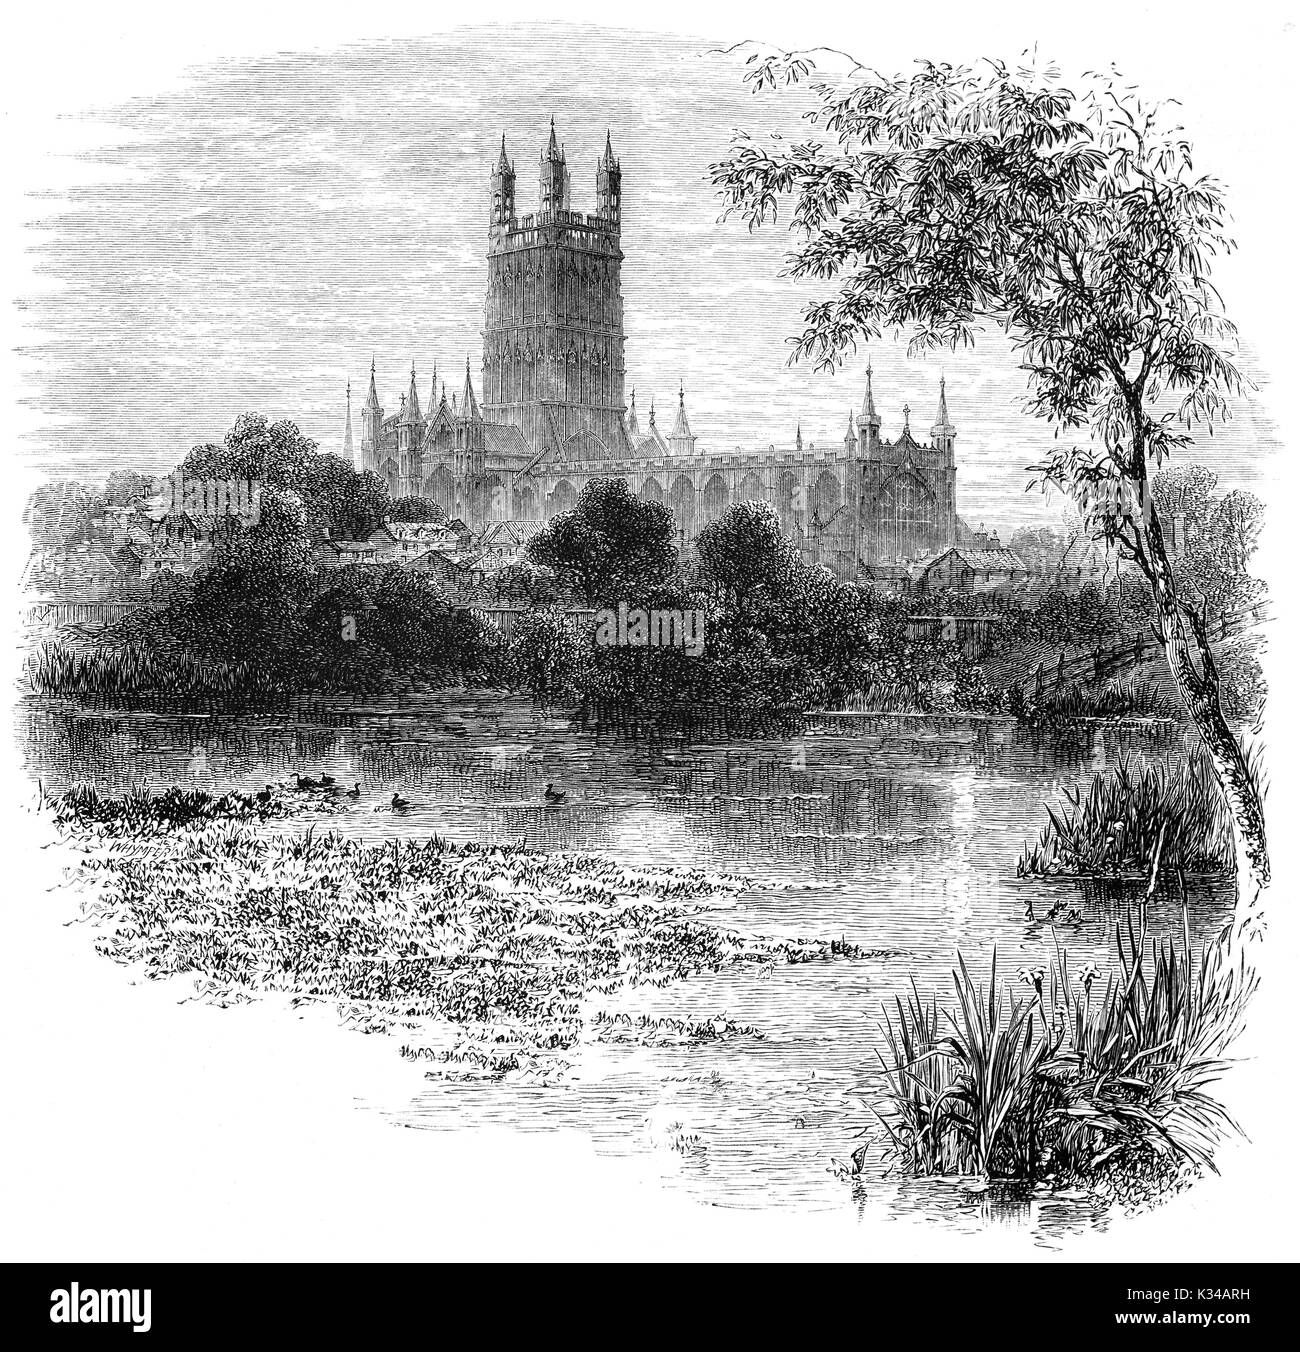 1870: die Kathedrale von Gloucester, formal die Kathedrale des Hl. Petrus und der Heiligen und unteilbaren Dreifaltigkeit aus über dem Fluss Severn gesehen. Es entstand in 678 oder 679 und wurde von König Heinrich VIII. aufgelöst Gloucester, England. Stockfoto